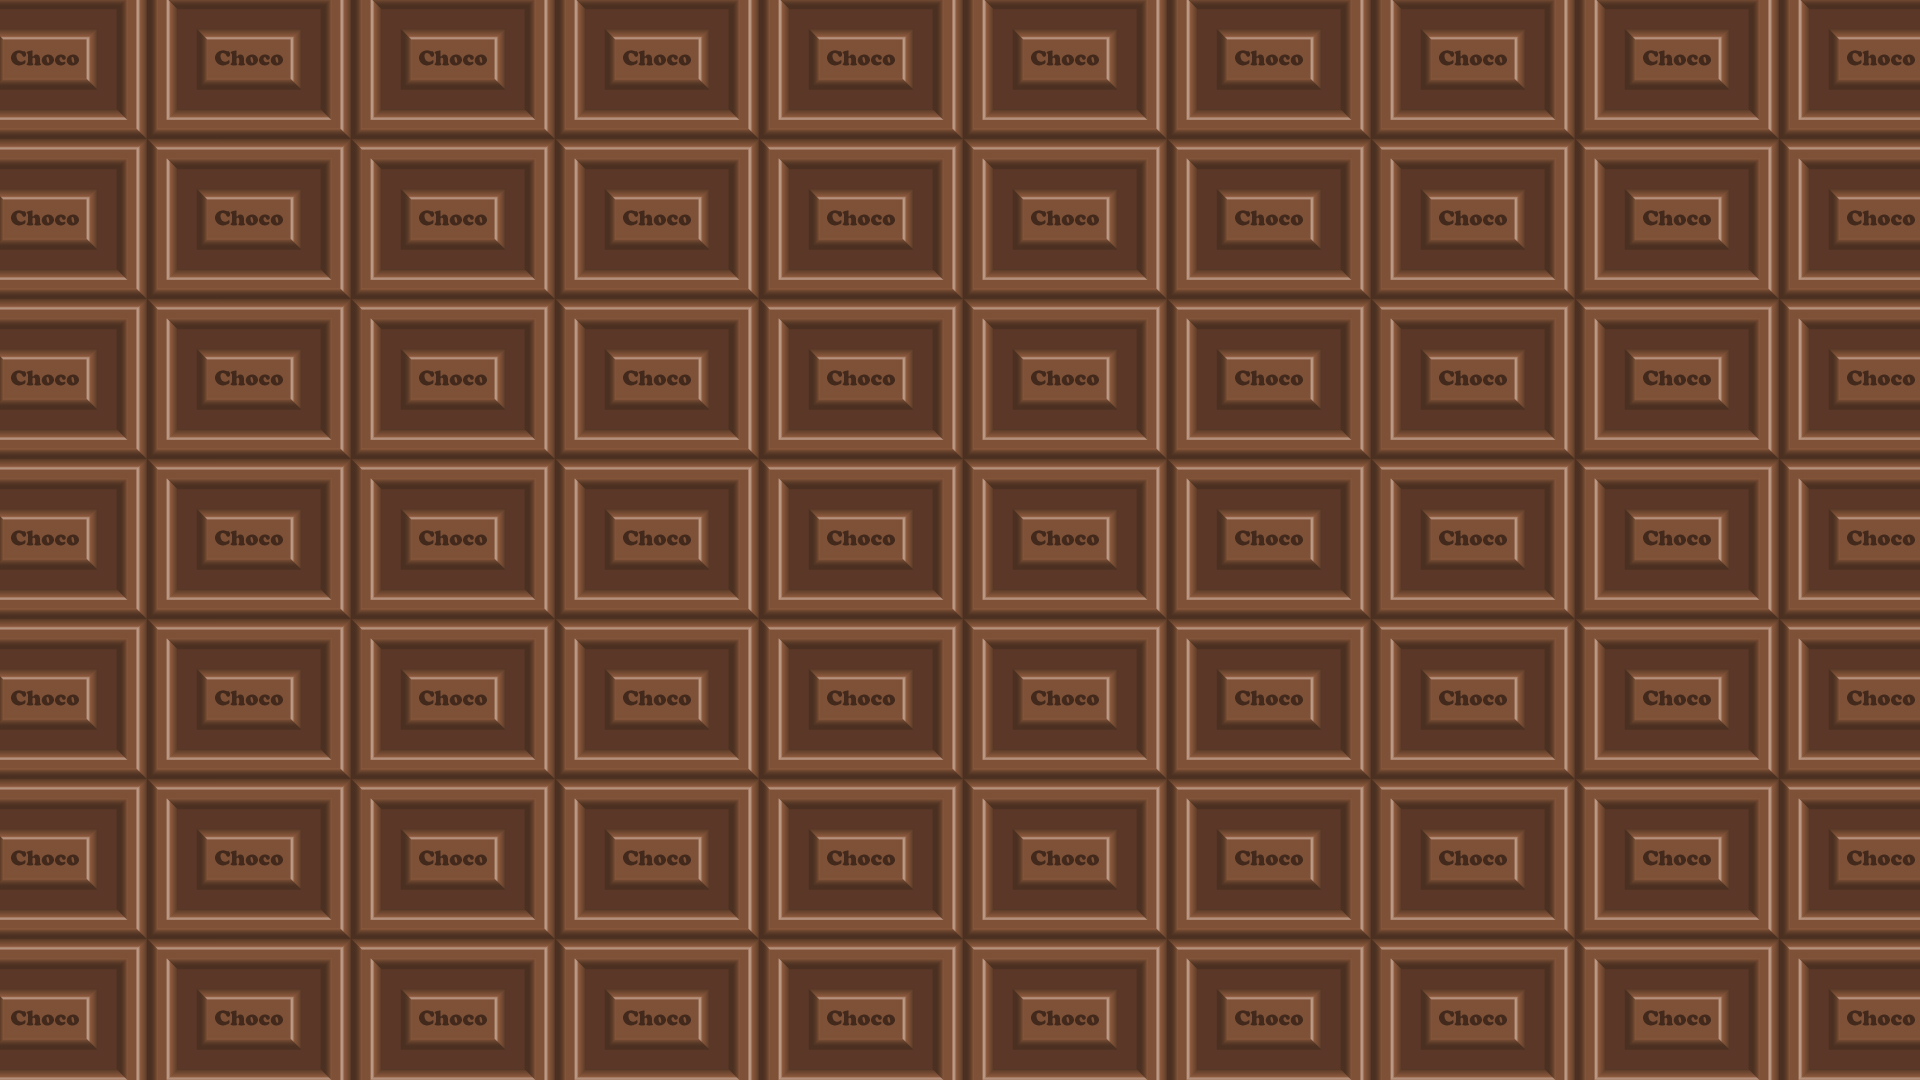 チョコレートの壁紙・背景素材 1,920px×1,080px